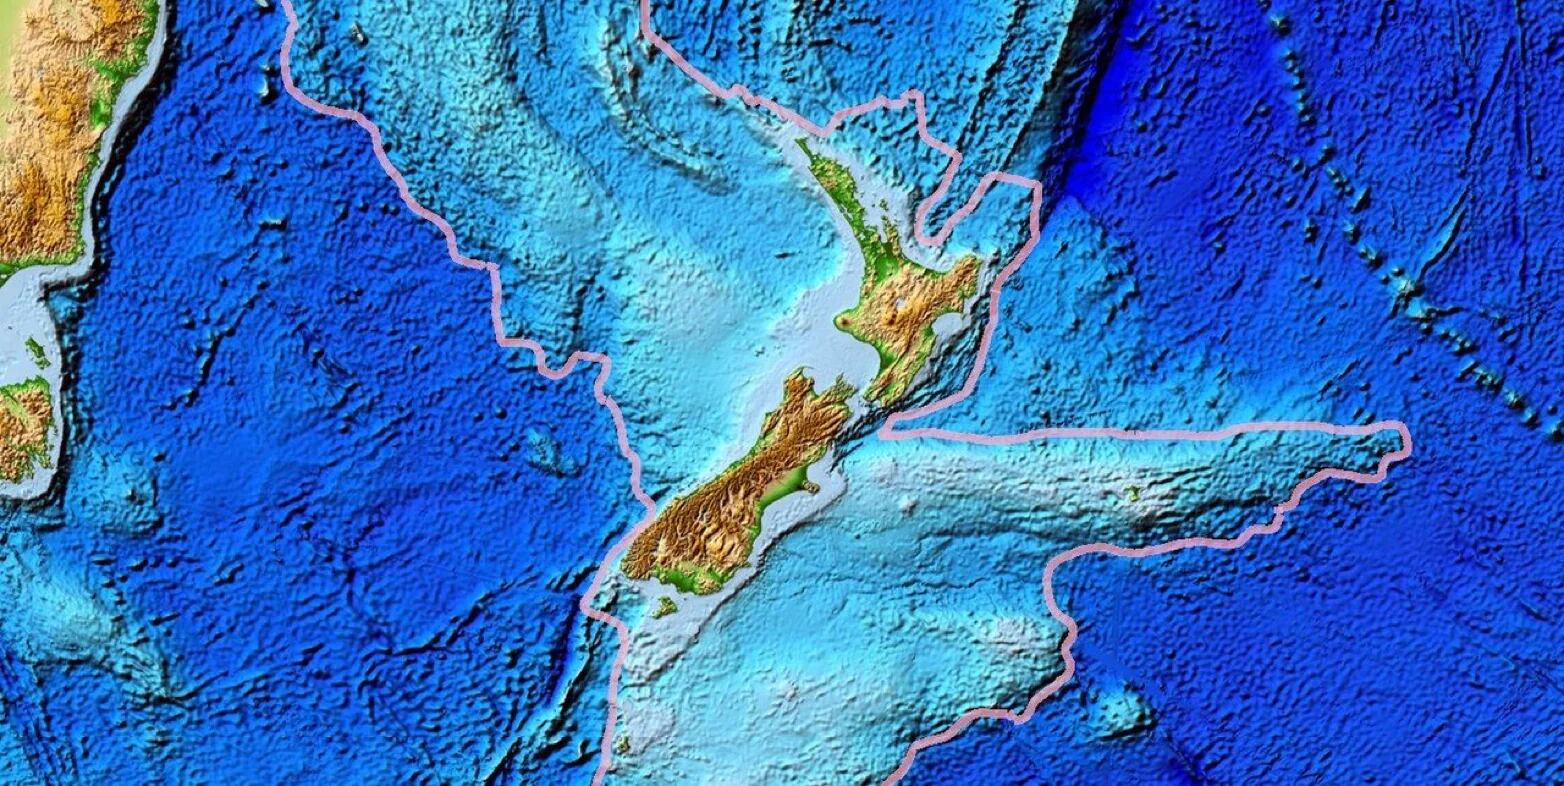 Zealandia emerge como candidato a octavo continente tras estudio exhaustivo de su geología submarina